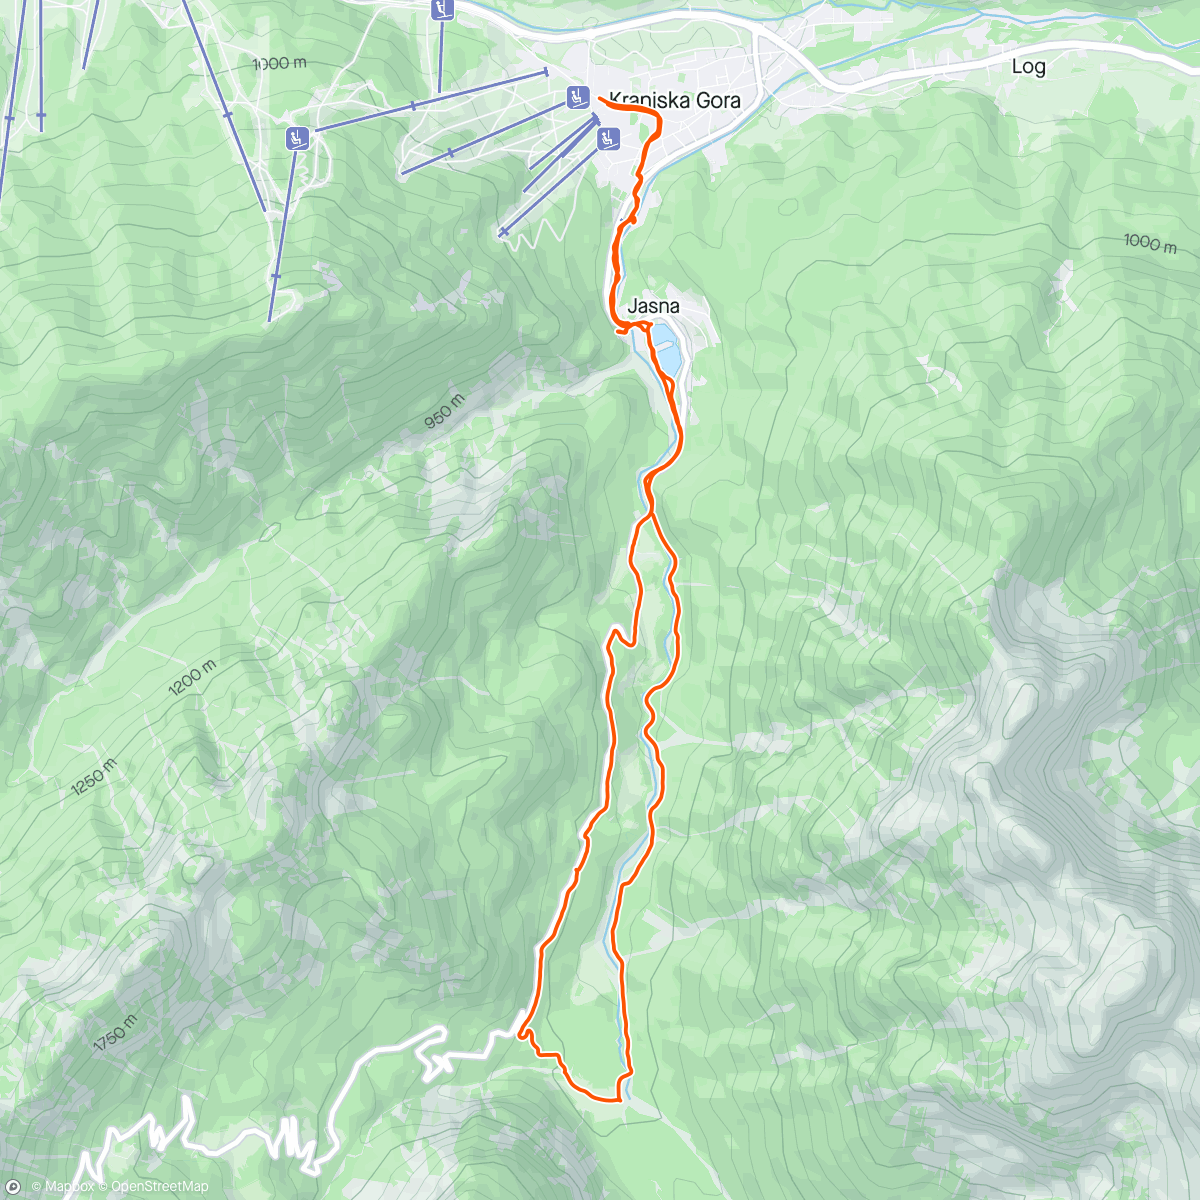 「Krnica kranjska gora」活動的地圖